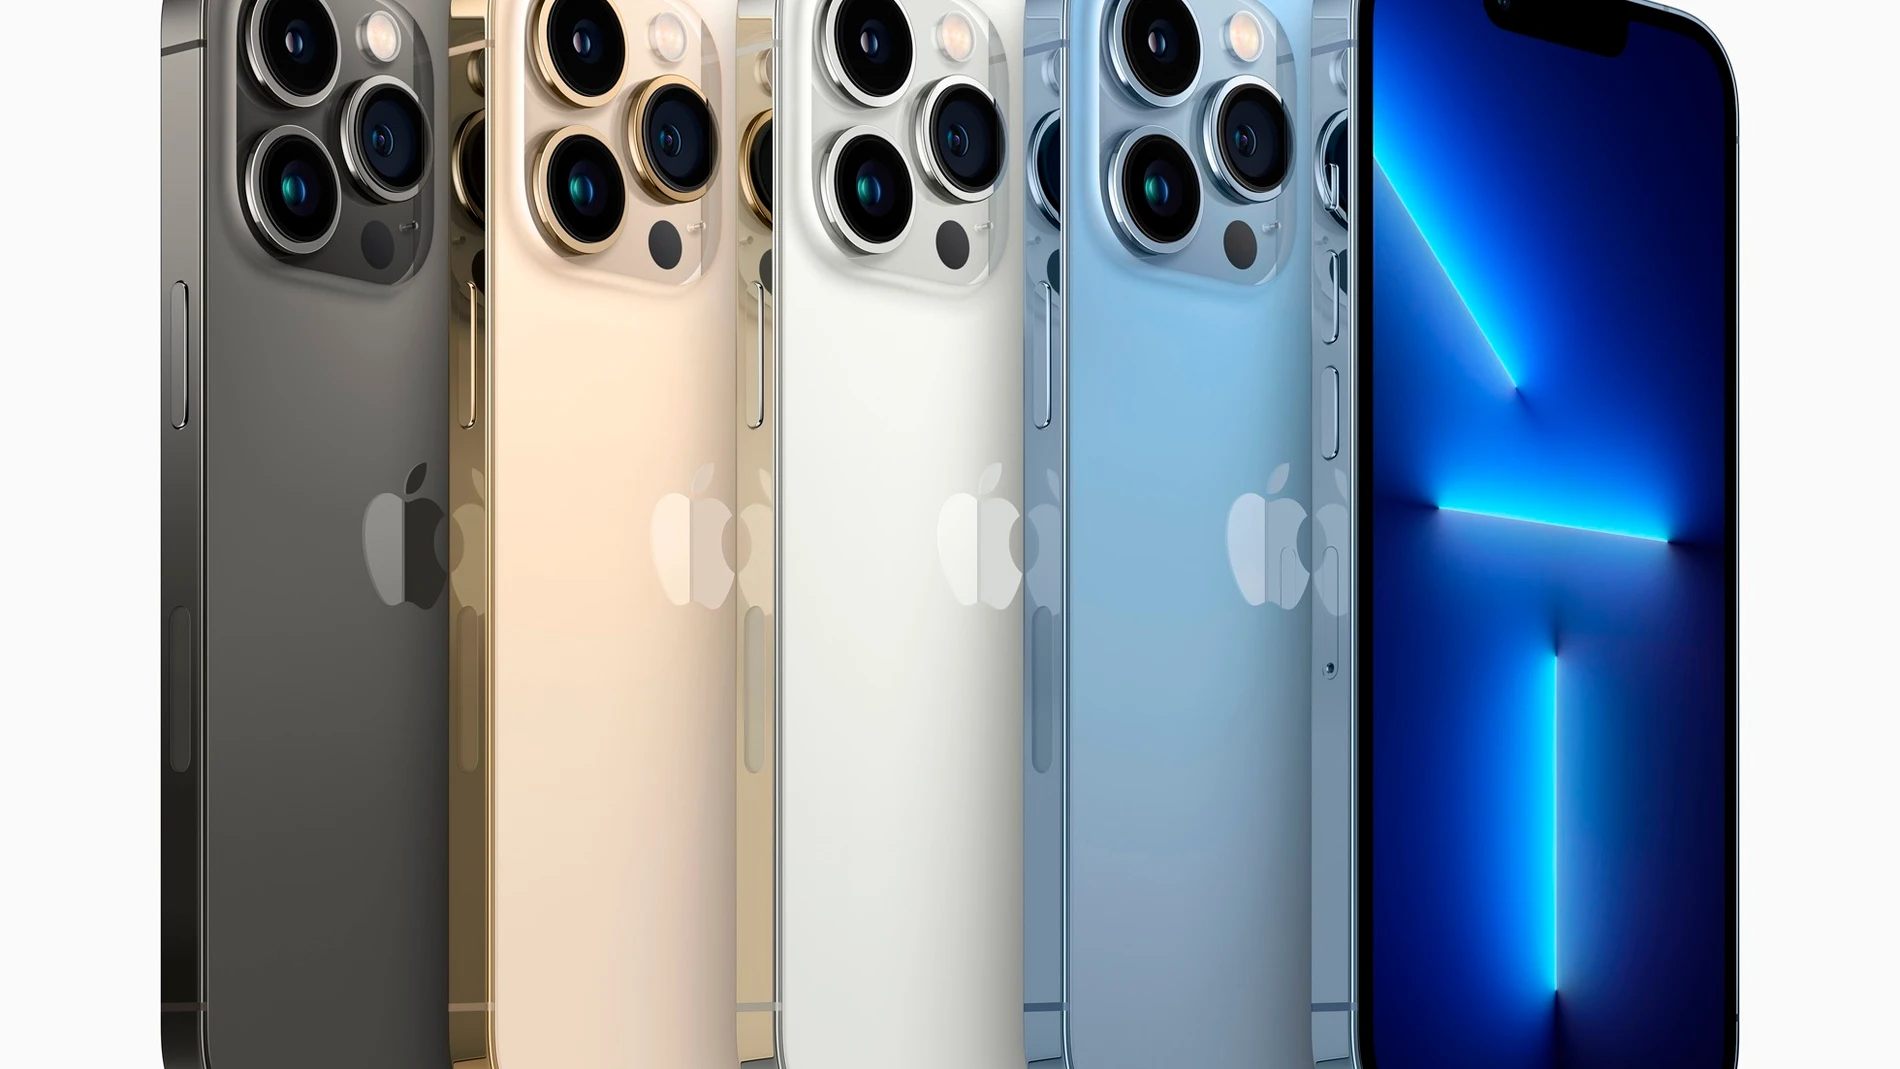 Nuevos iPhone 12 y iPhone 12 mini: Nuevo diseño, 5G, pantalla Super Retina  XDR y mucha